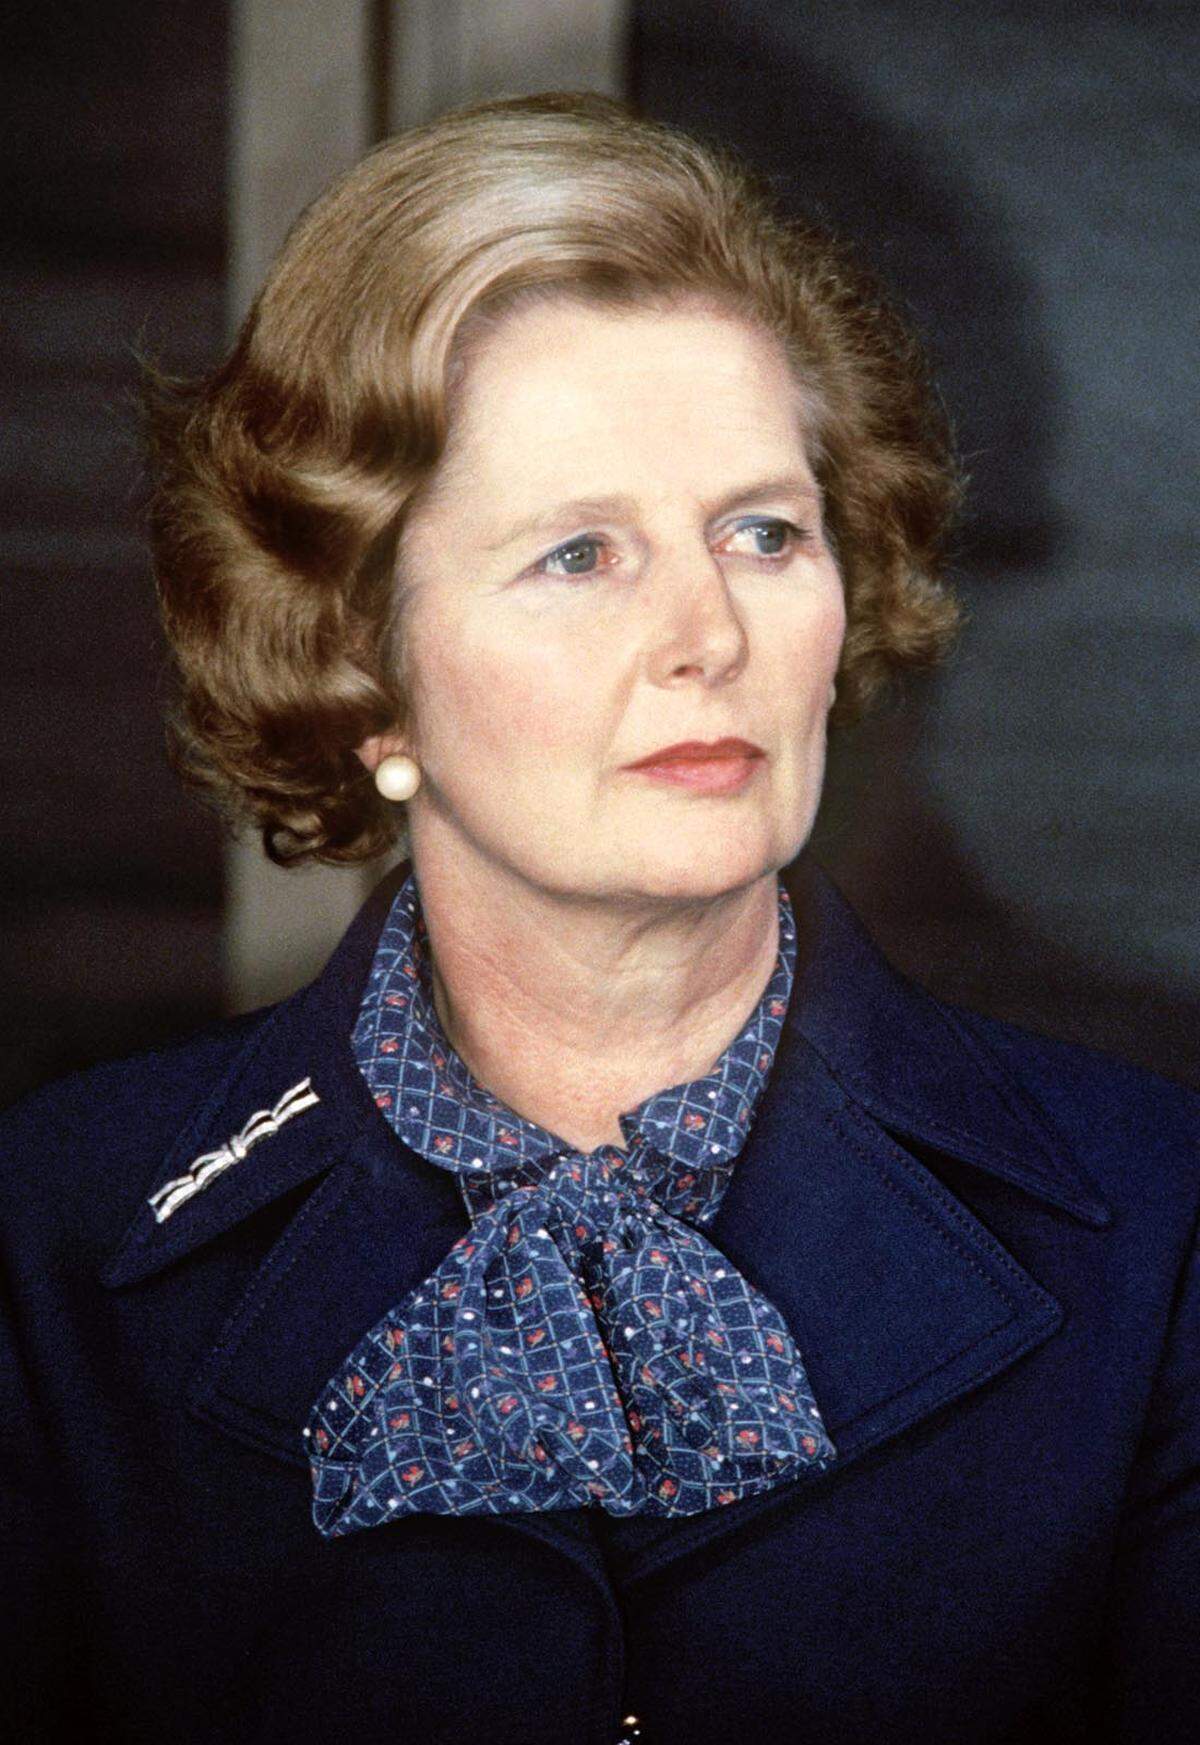 Premierministerin Margaret Thatcher macht sich zunächst für den Britenrabatt stark, den sie 1984 erkämpft, und anschließend für die Schaffung des Gemeinsamen Binnenmarkts. 1985 wird mit tatkräftiger Unterstützung Großbritanniens die Einheitliche Europäische Akte beschlossen, mit der die Weichen Richtung Binnenmarkt gestellt werden. 1990 treten die Briten dem Wechselkursmechanismus ERM bei, mit dem die Währungen ihrer Mitglieder koordiniert werden.